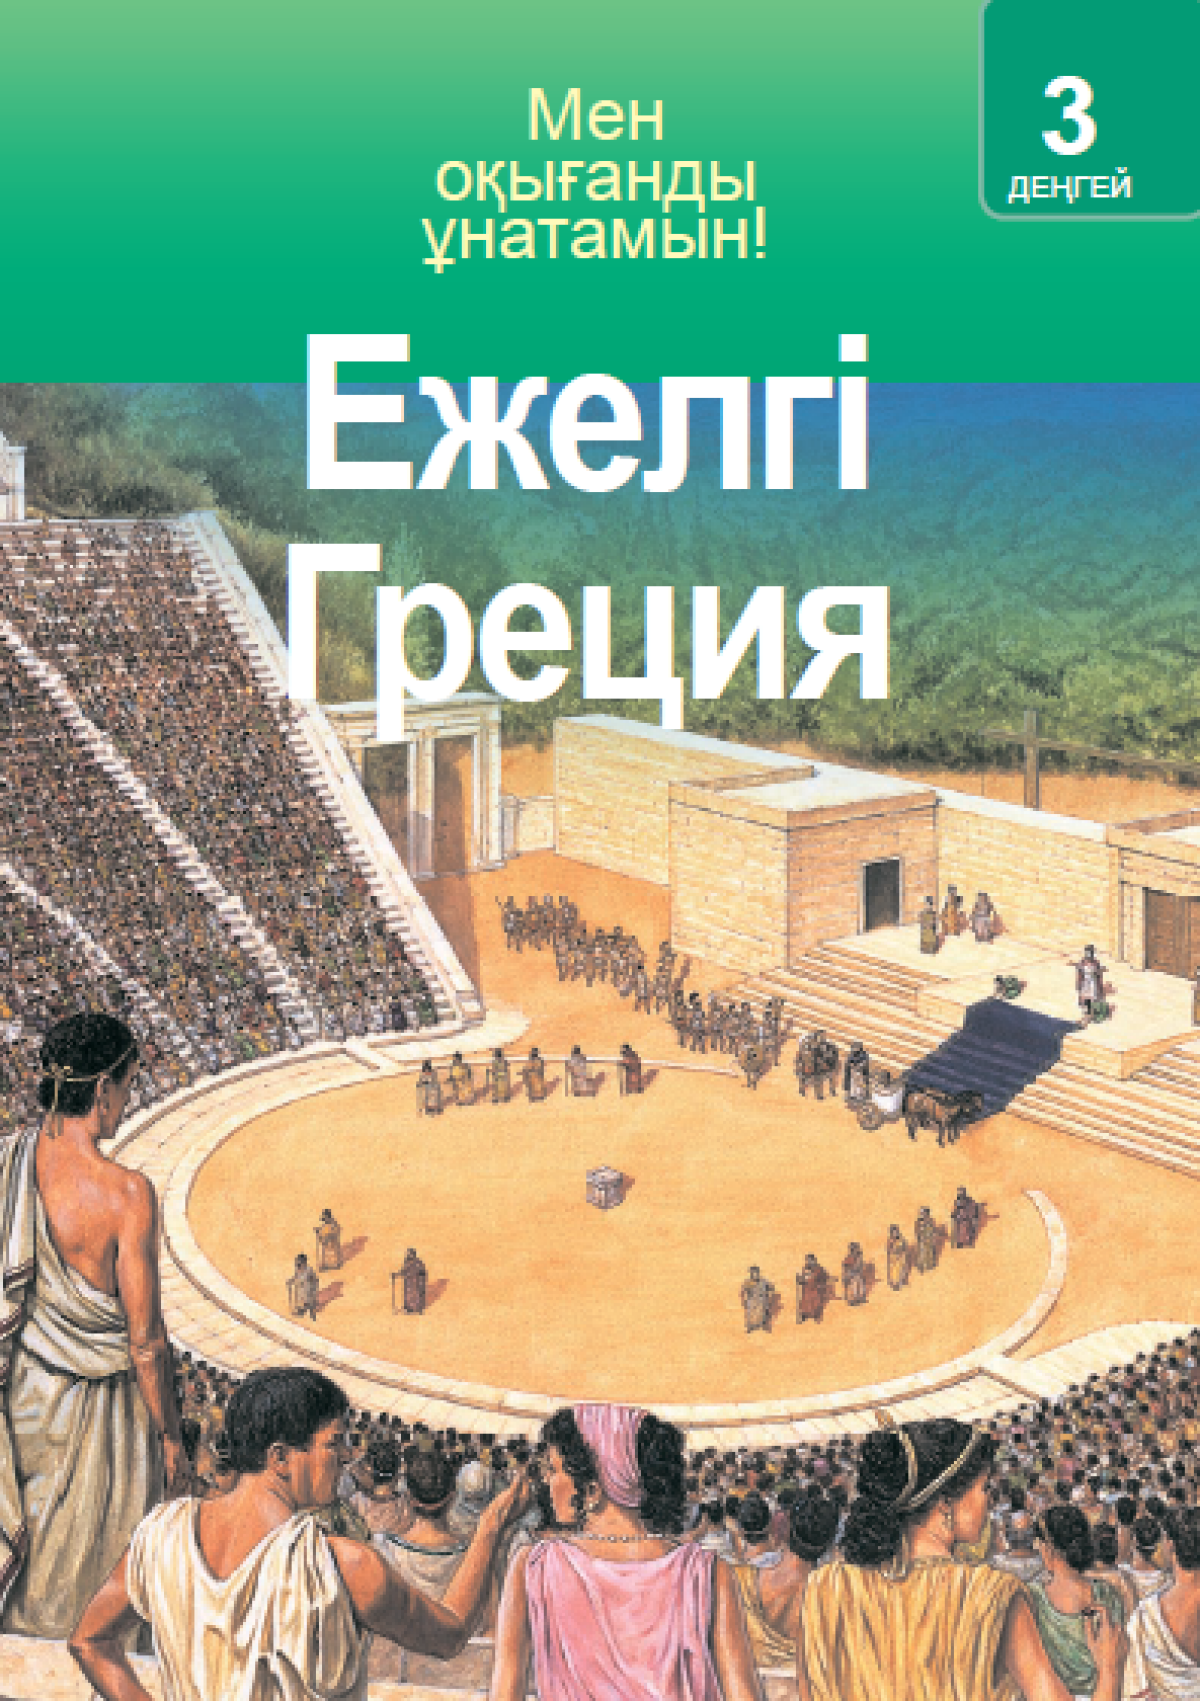 Древний читать. Книги стародавней Греции. Я люблю читать древняя Греция. Древний мир читать.